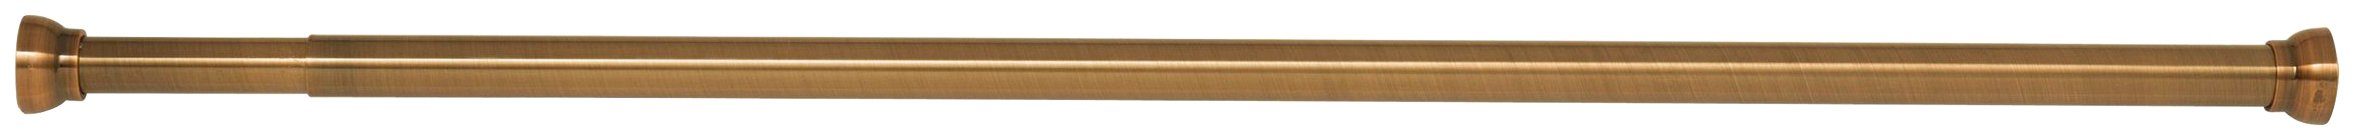 Bohren, gold cm Kreta, kürzbar, für 75-125 Duschvorhänge, Aluminium, mit Ø 21 mm, Klemmstange spirella, Länge